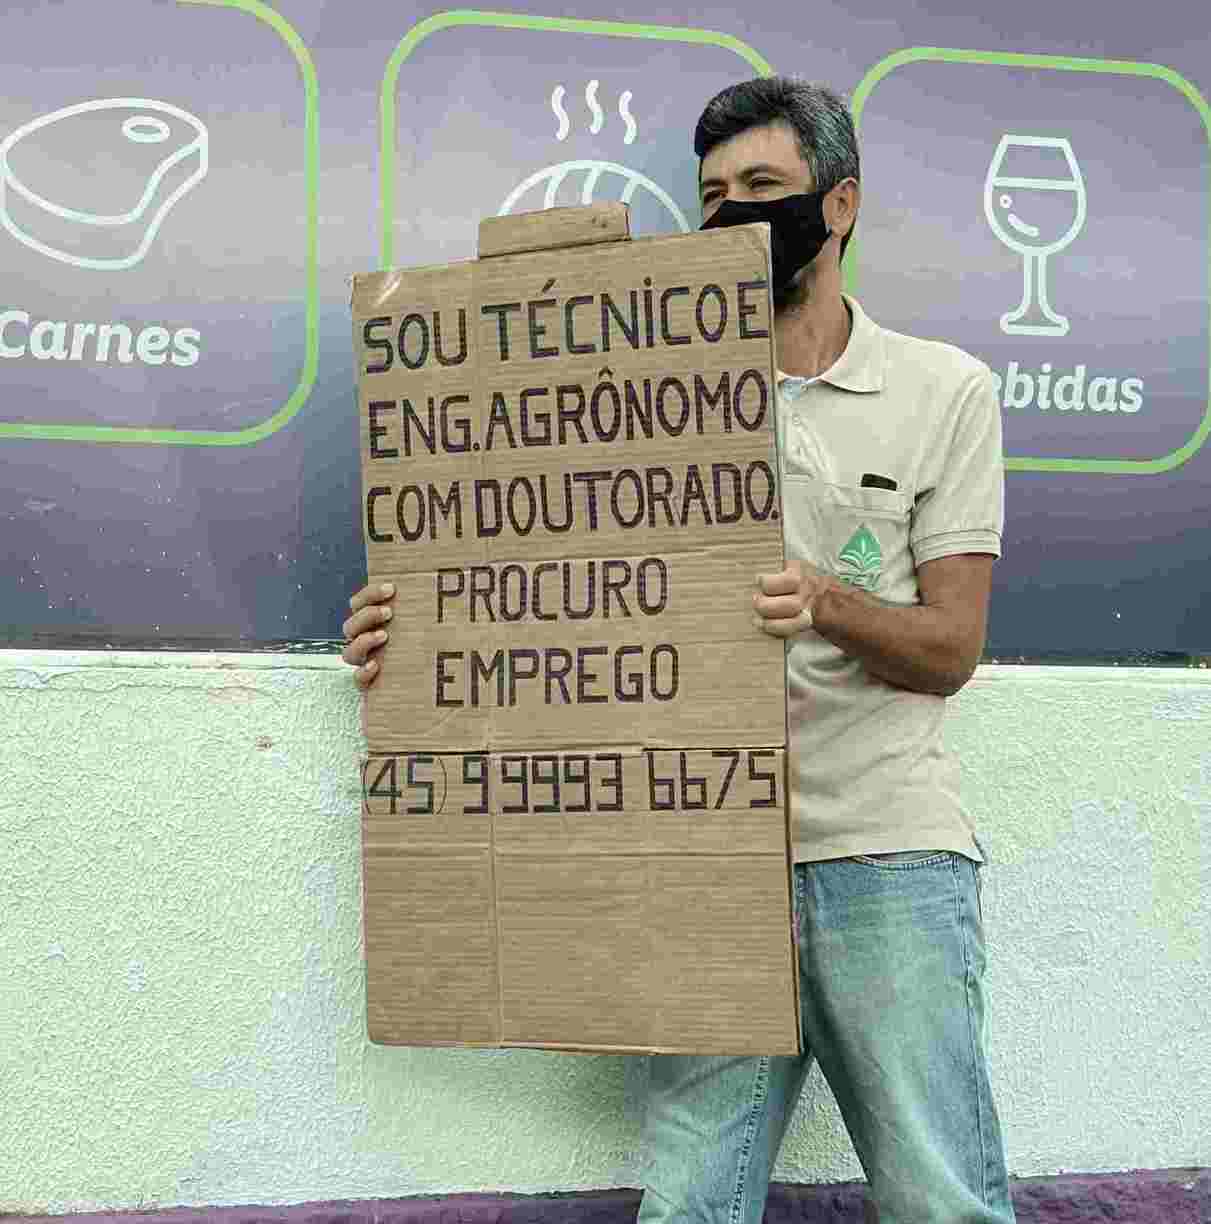 Doutor em engenharia agronômica procura emprego nas ruas do Recife 